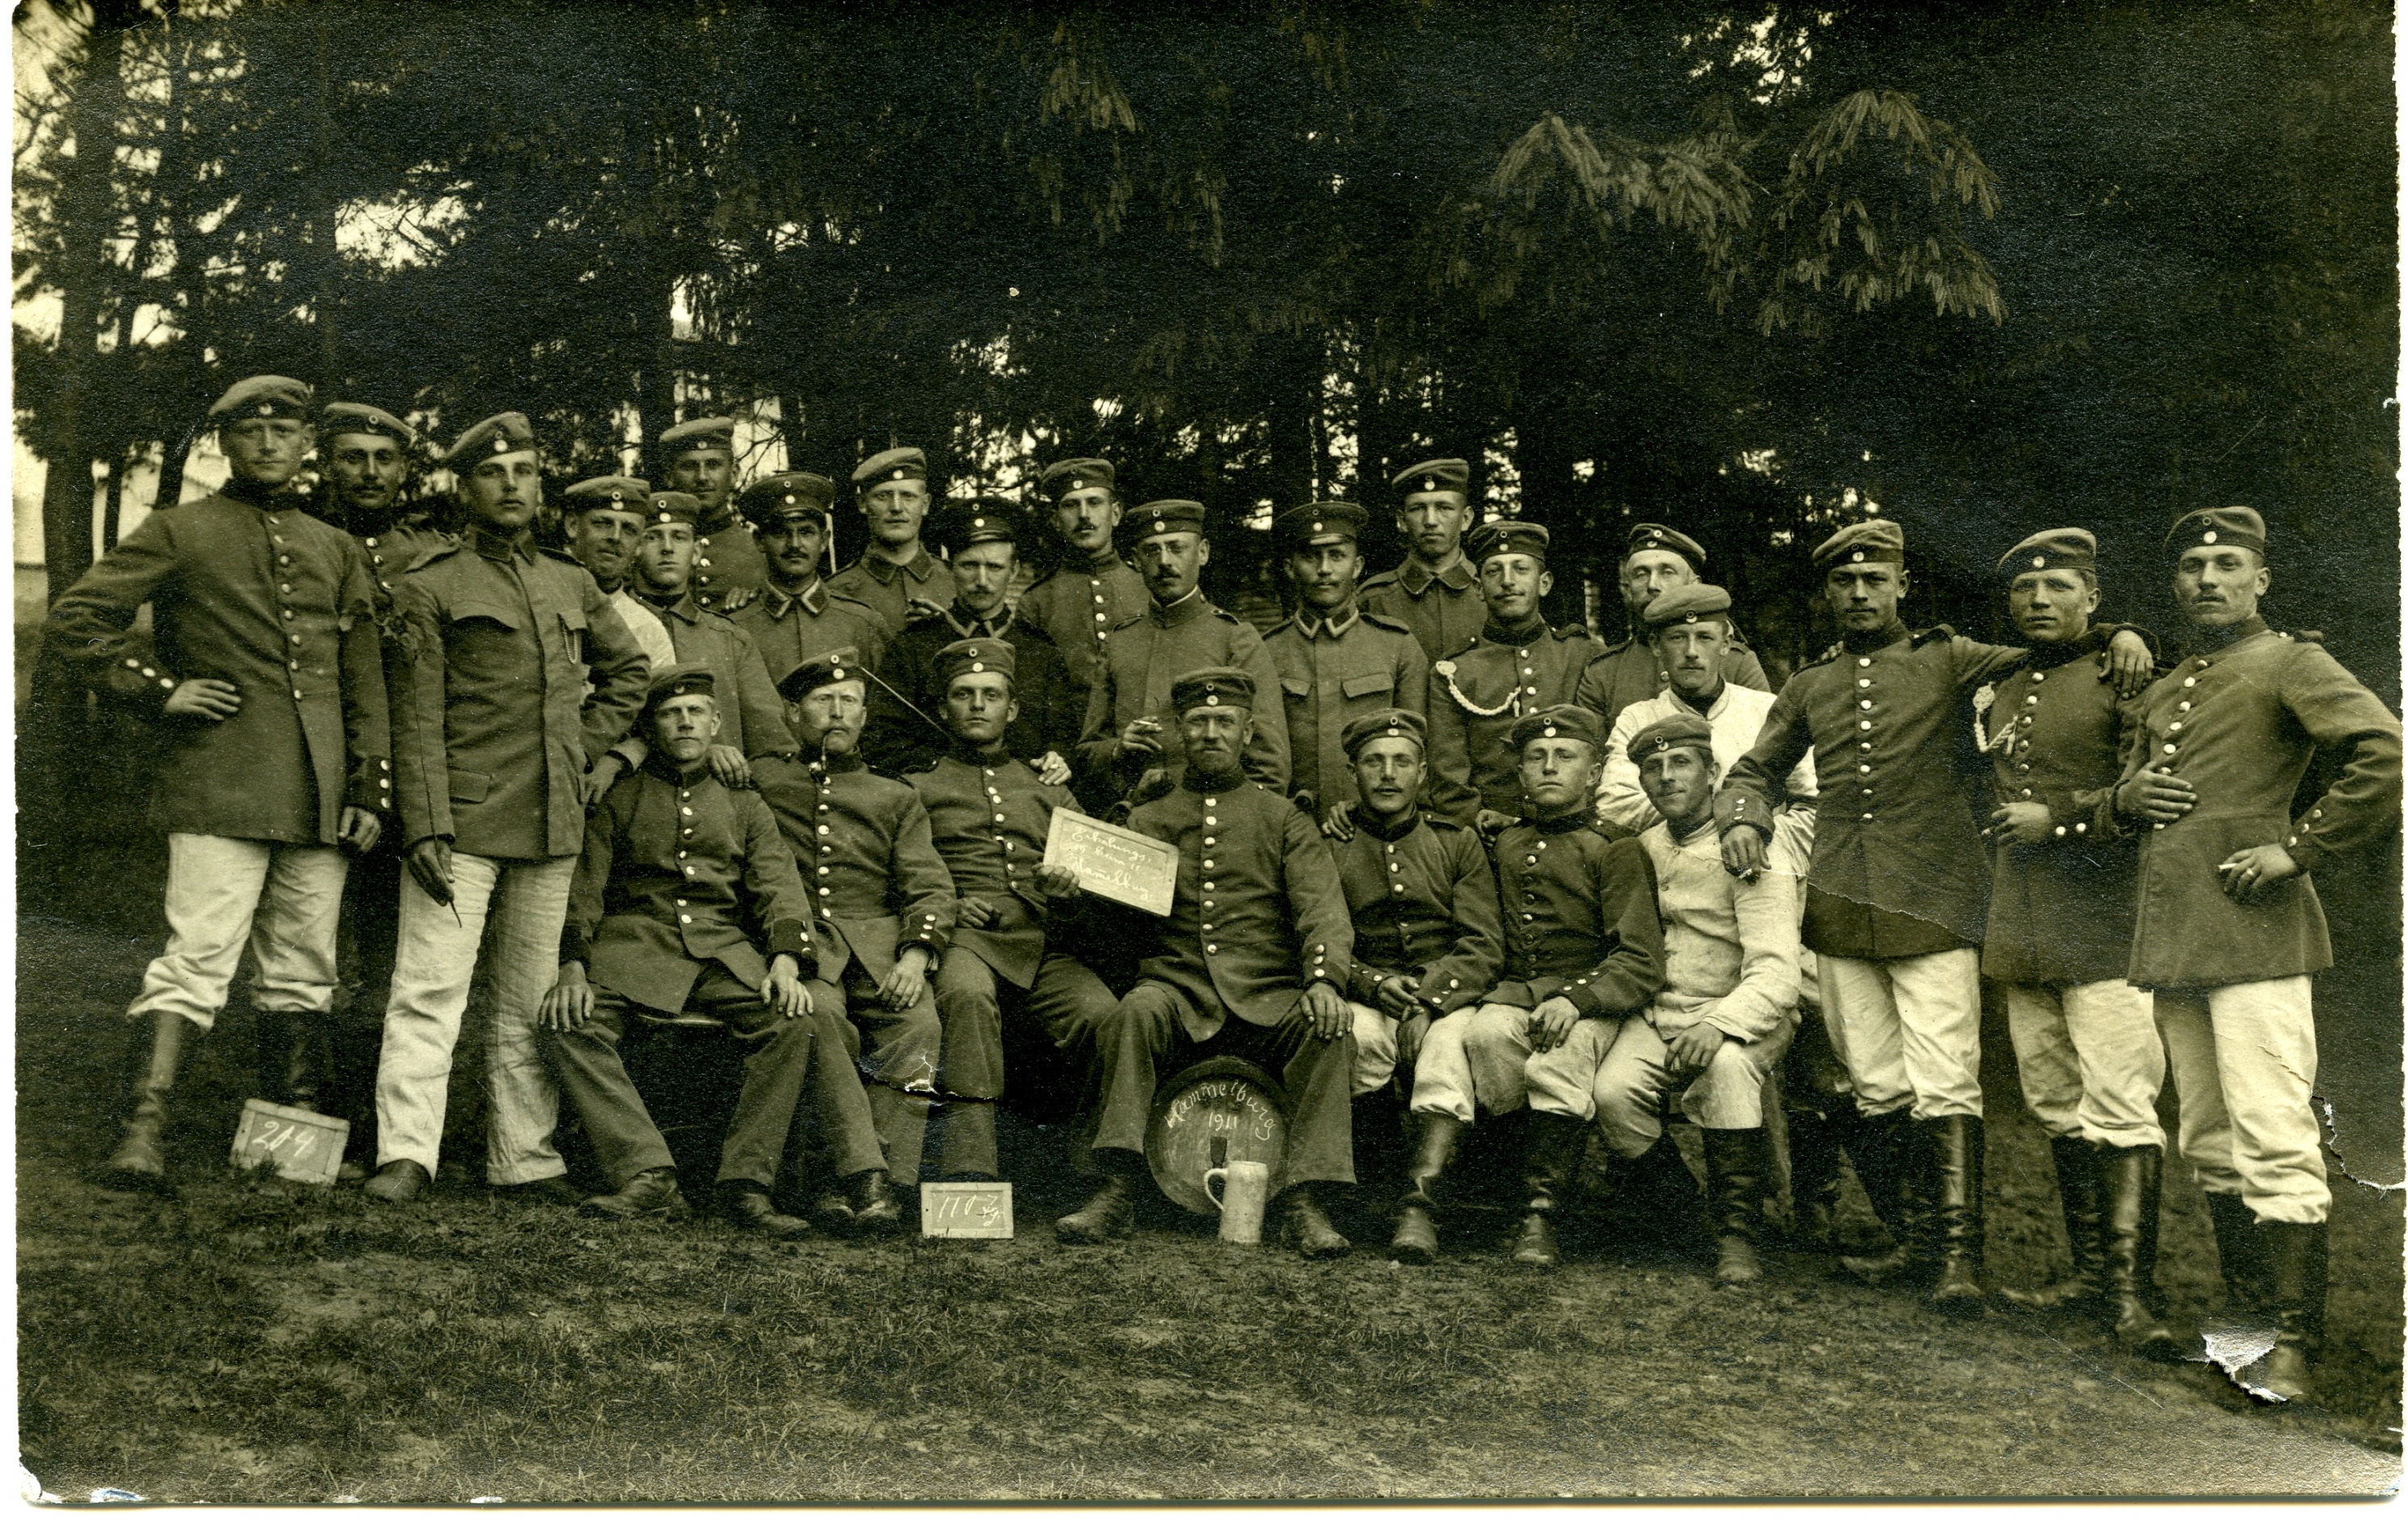 Fotopostkarte "Gruppenportrait unbekannte Soldaten - Hammelburg 1911" (Historisches Museum der Pfalz, Speyer CC BY)